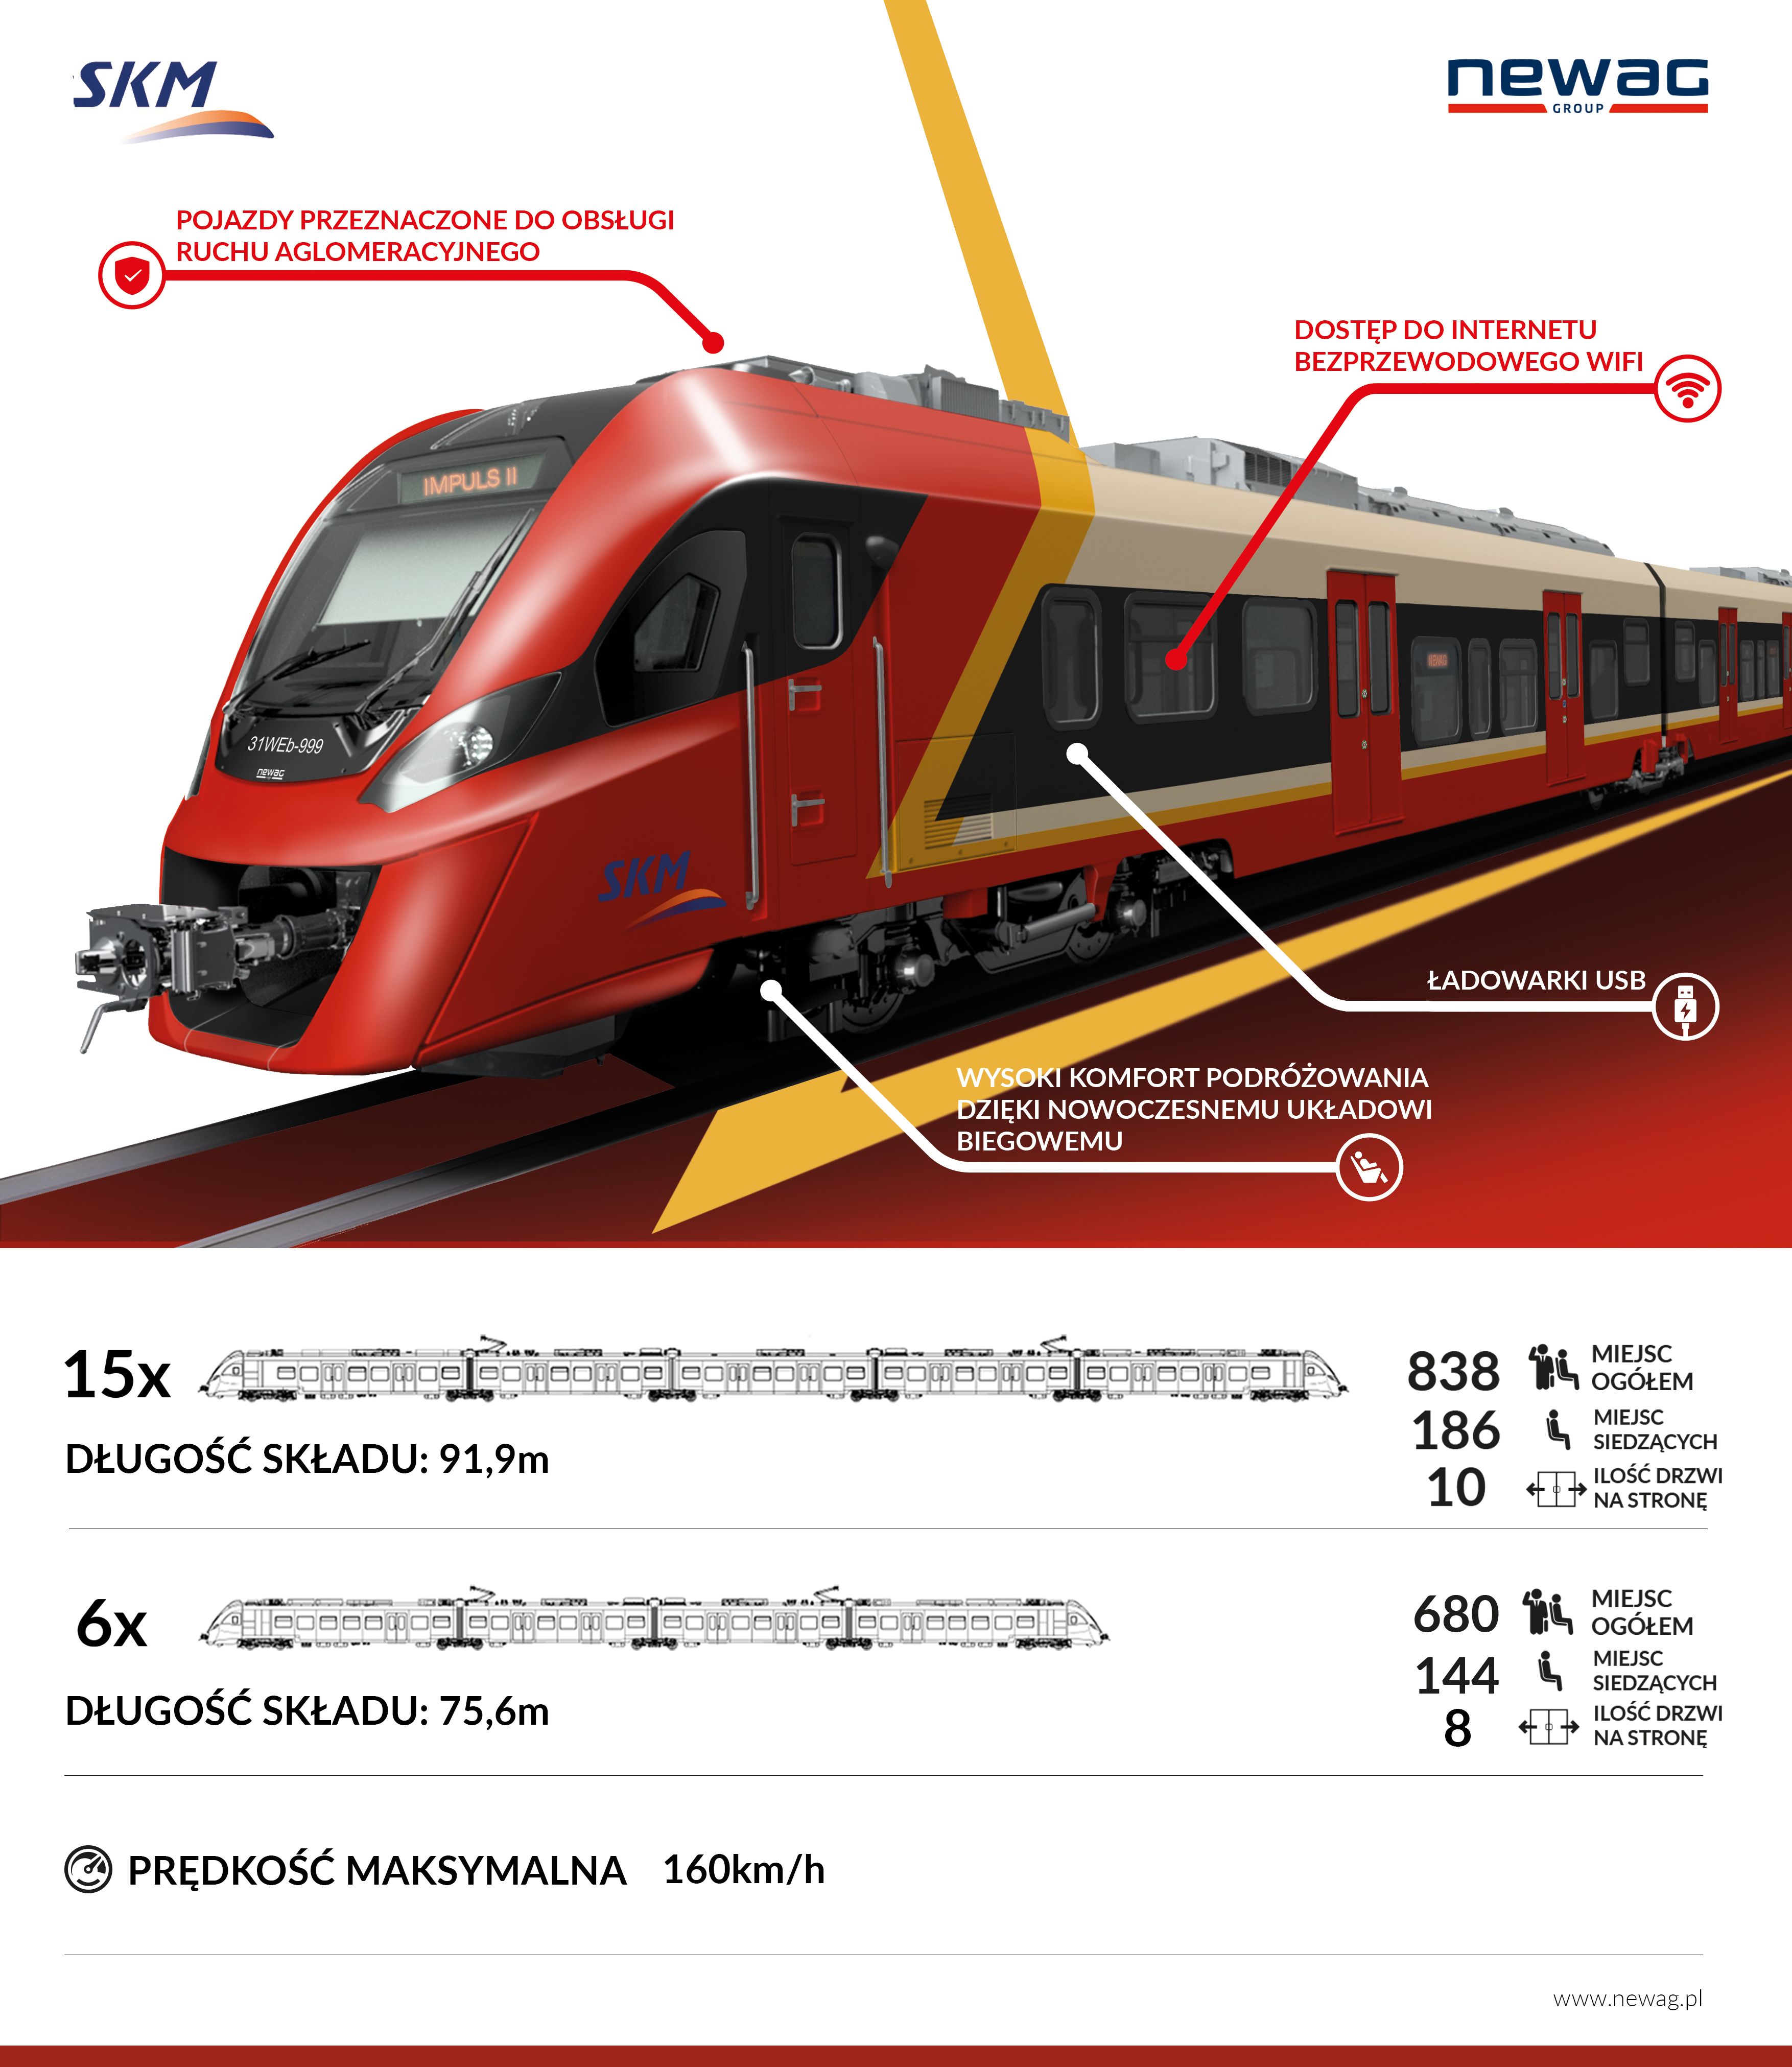 Wizualizacja nowego pociągu stworzona przez firmę NEWAG